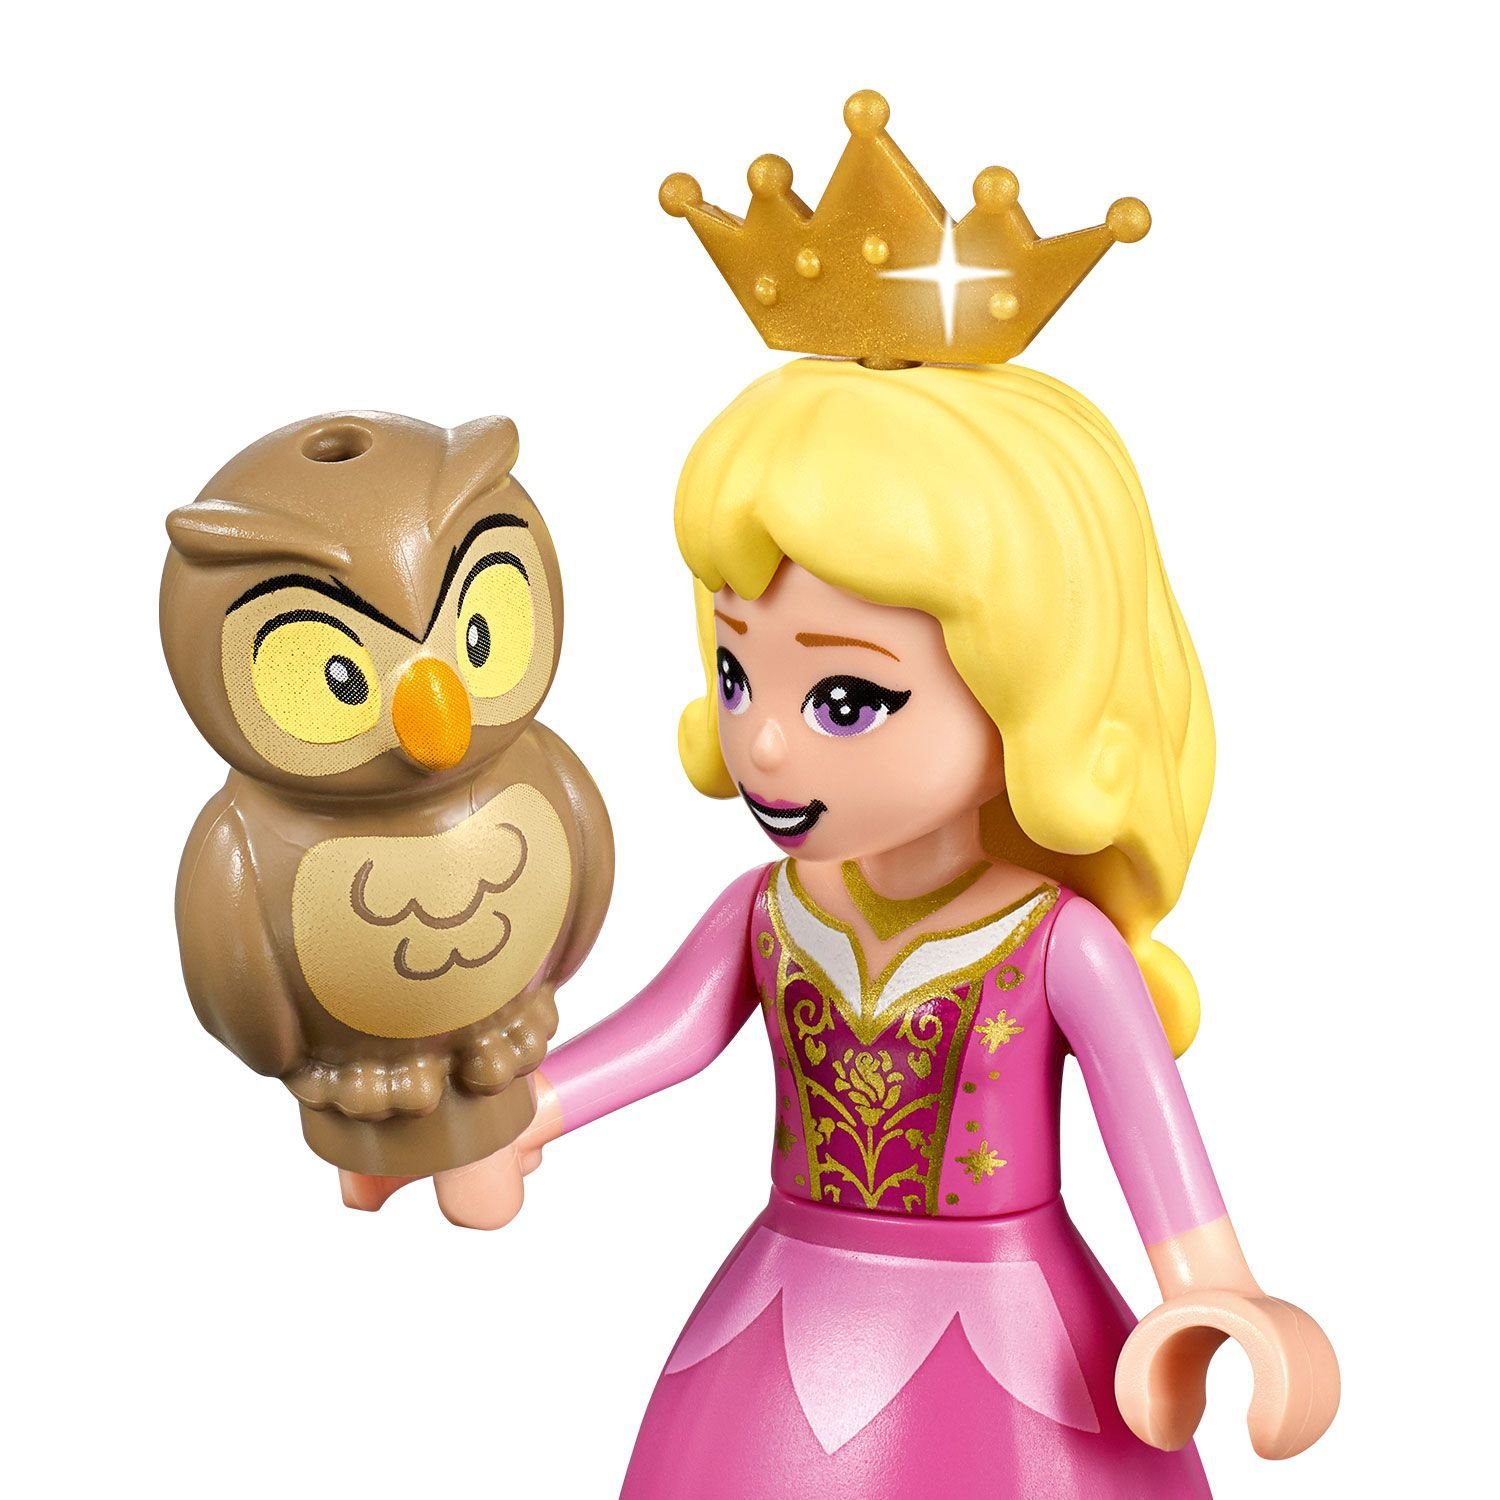 Lego Disney Princess 43173 Королевская карета Авроры